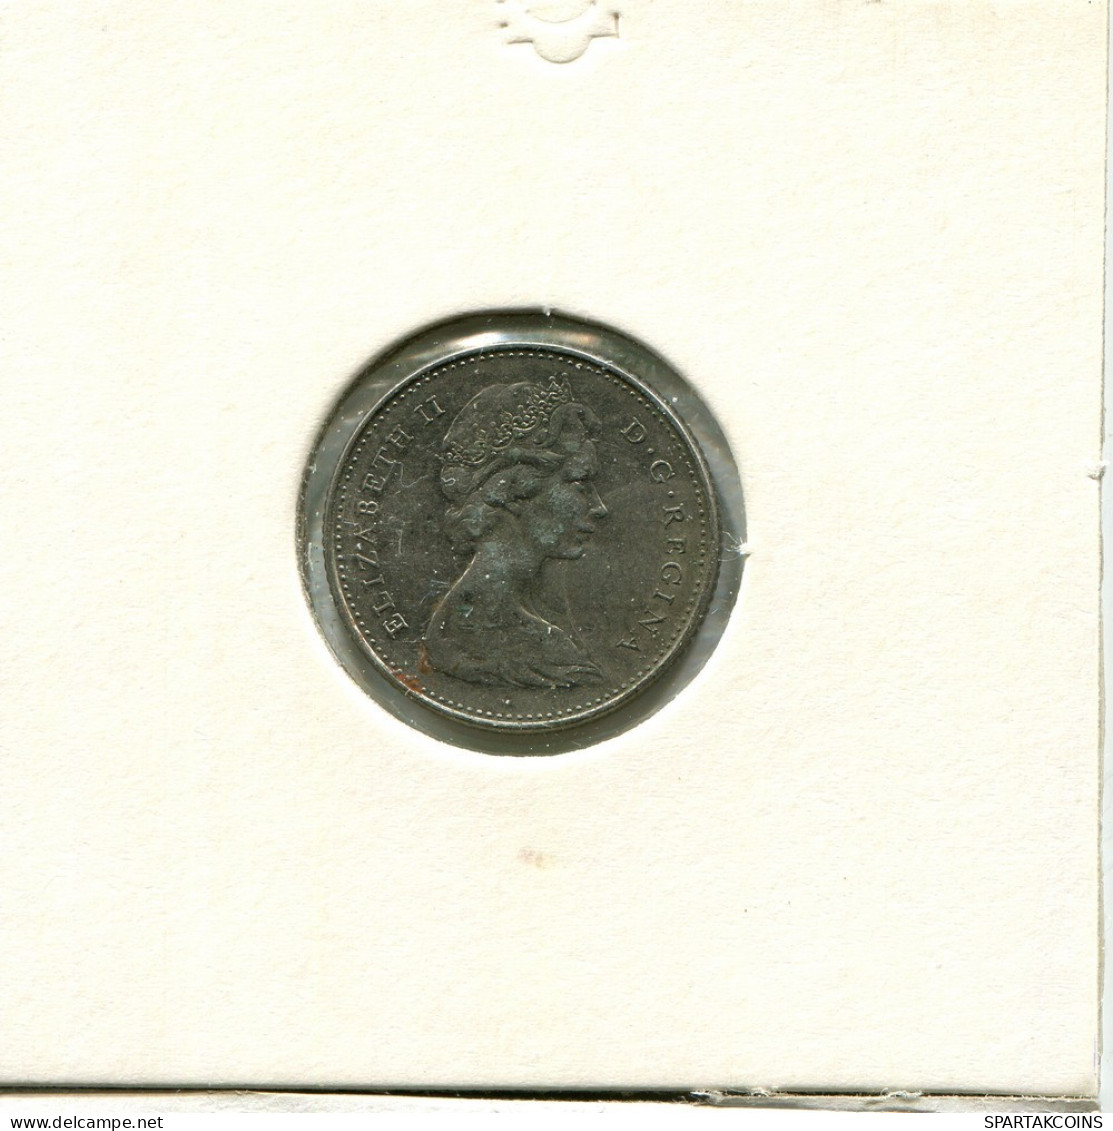 10 CENT 1978 CANADA Coin #AU225.U.A - Canada